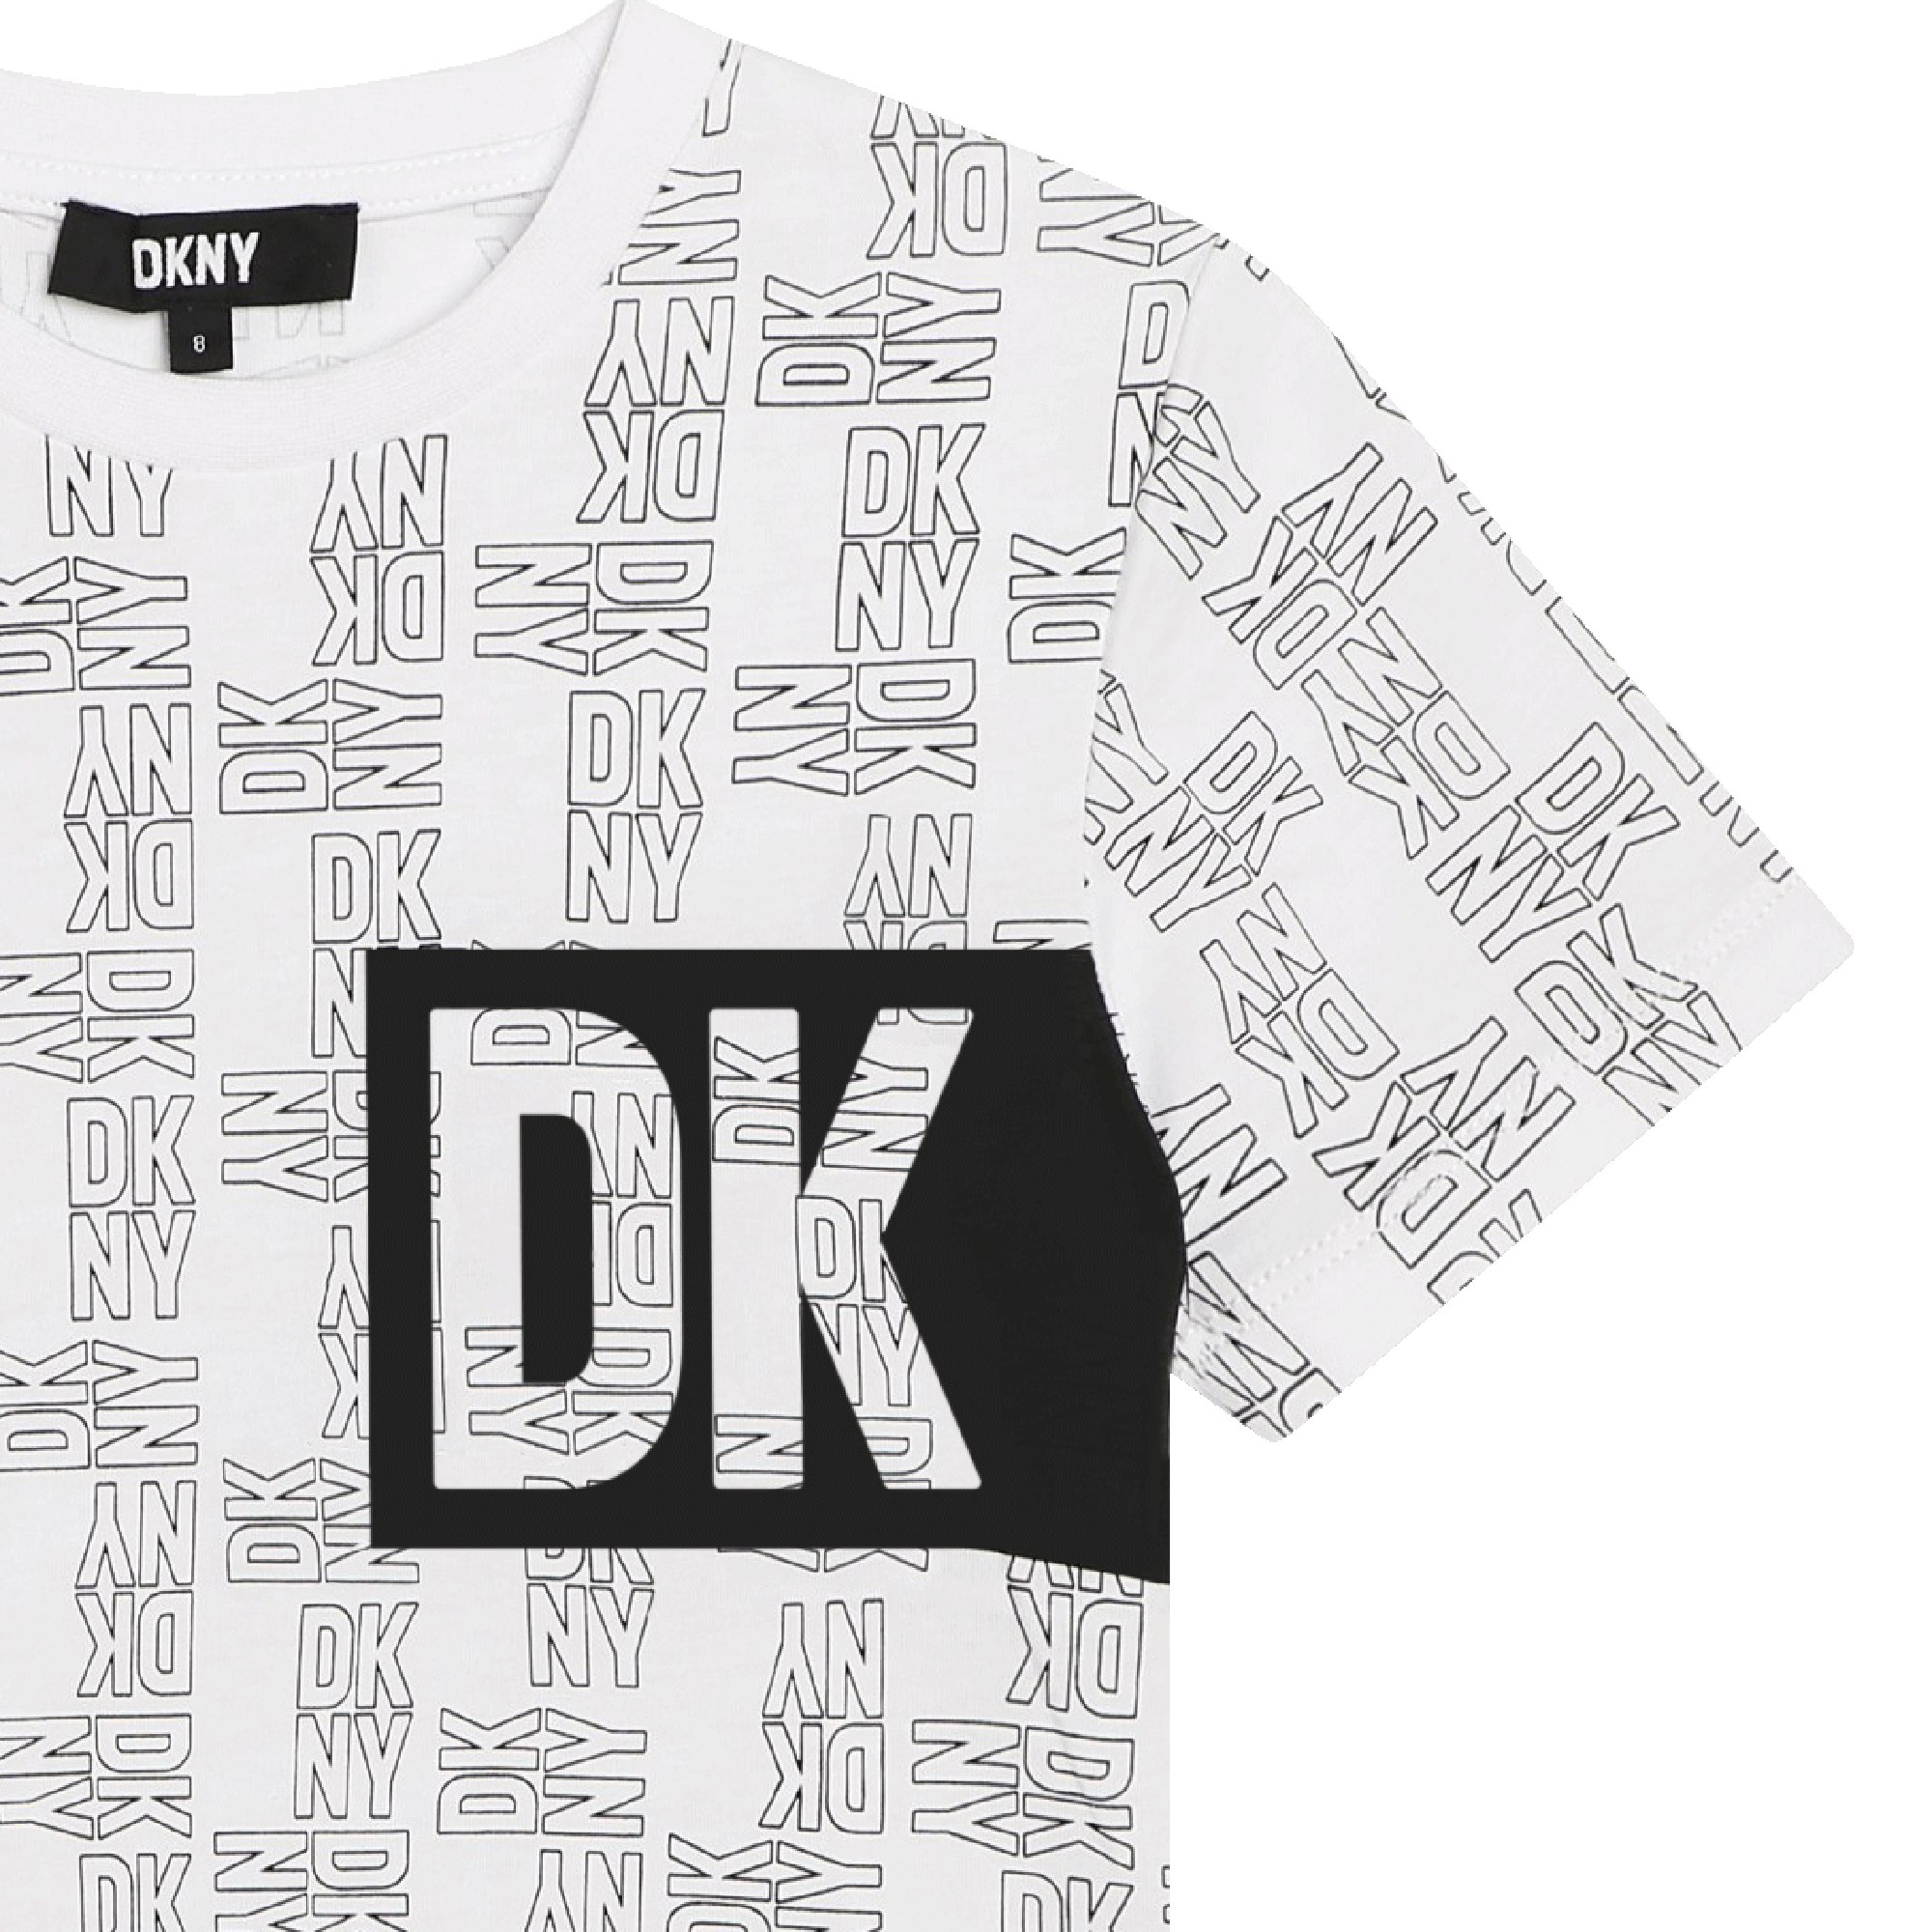 T-shirt unisexe en coton DKNY pour UNISEXE